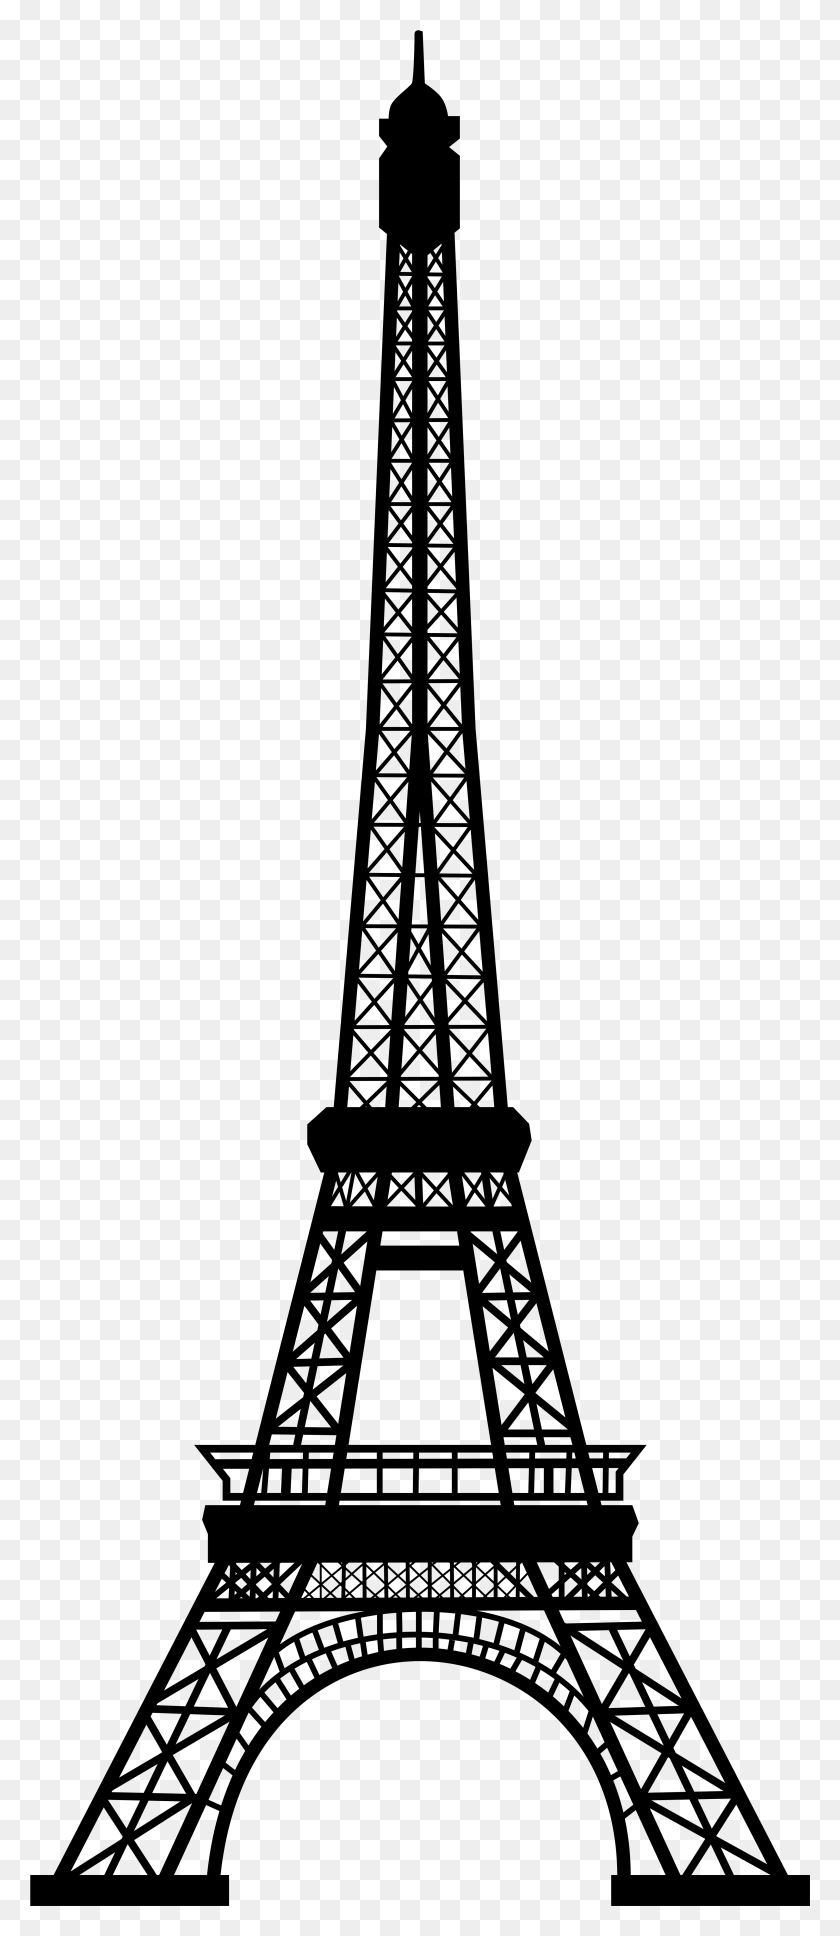 3246x7809 La Torre Eiffel Png / Silueta De La Torre Eiffel Hd Png